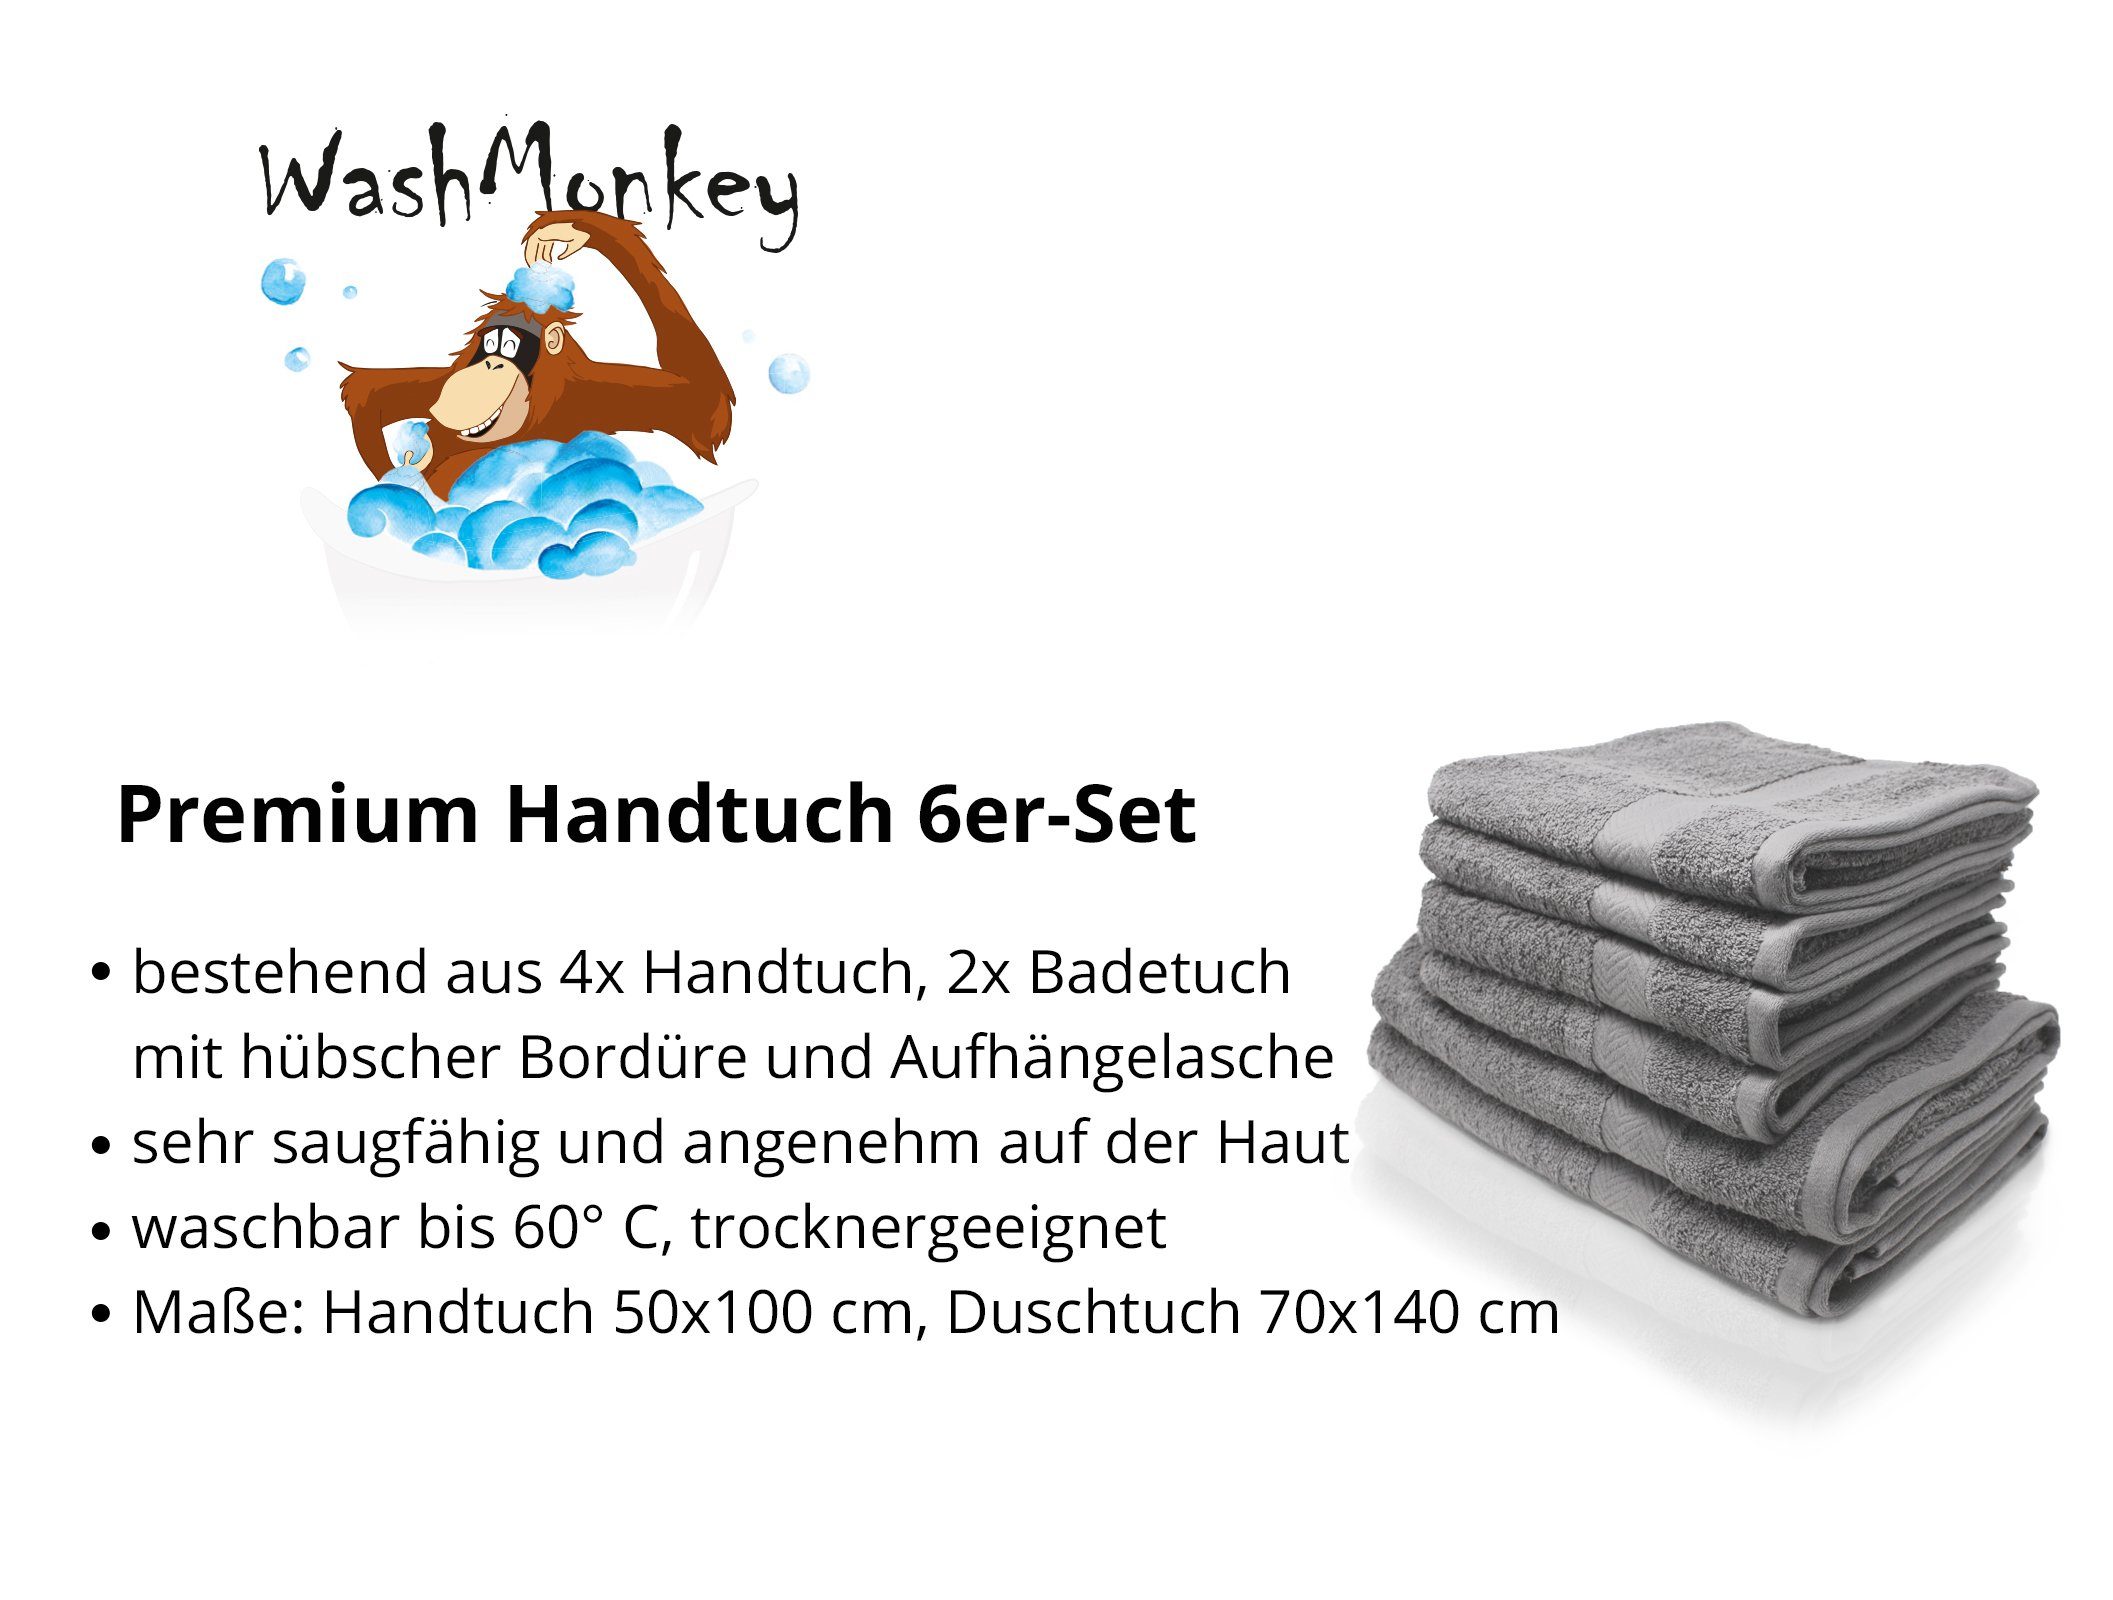 Up Close Badetücher HandtuchSet 6teilig